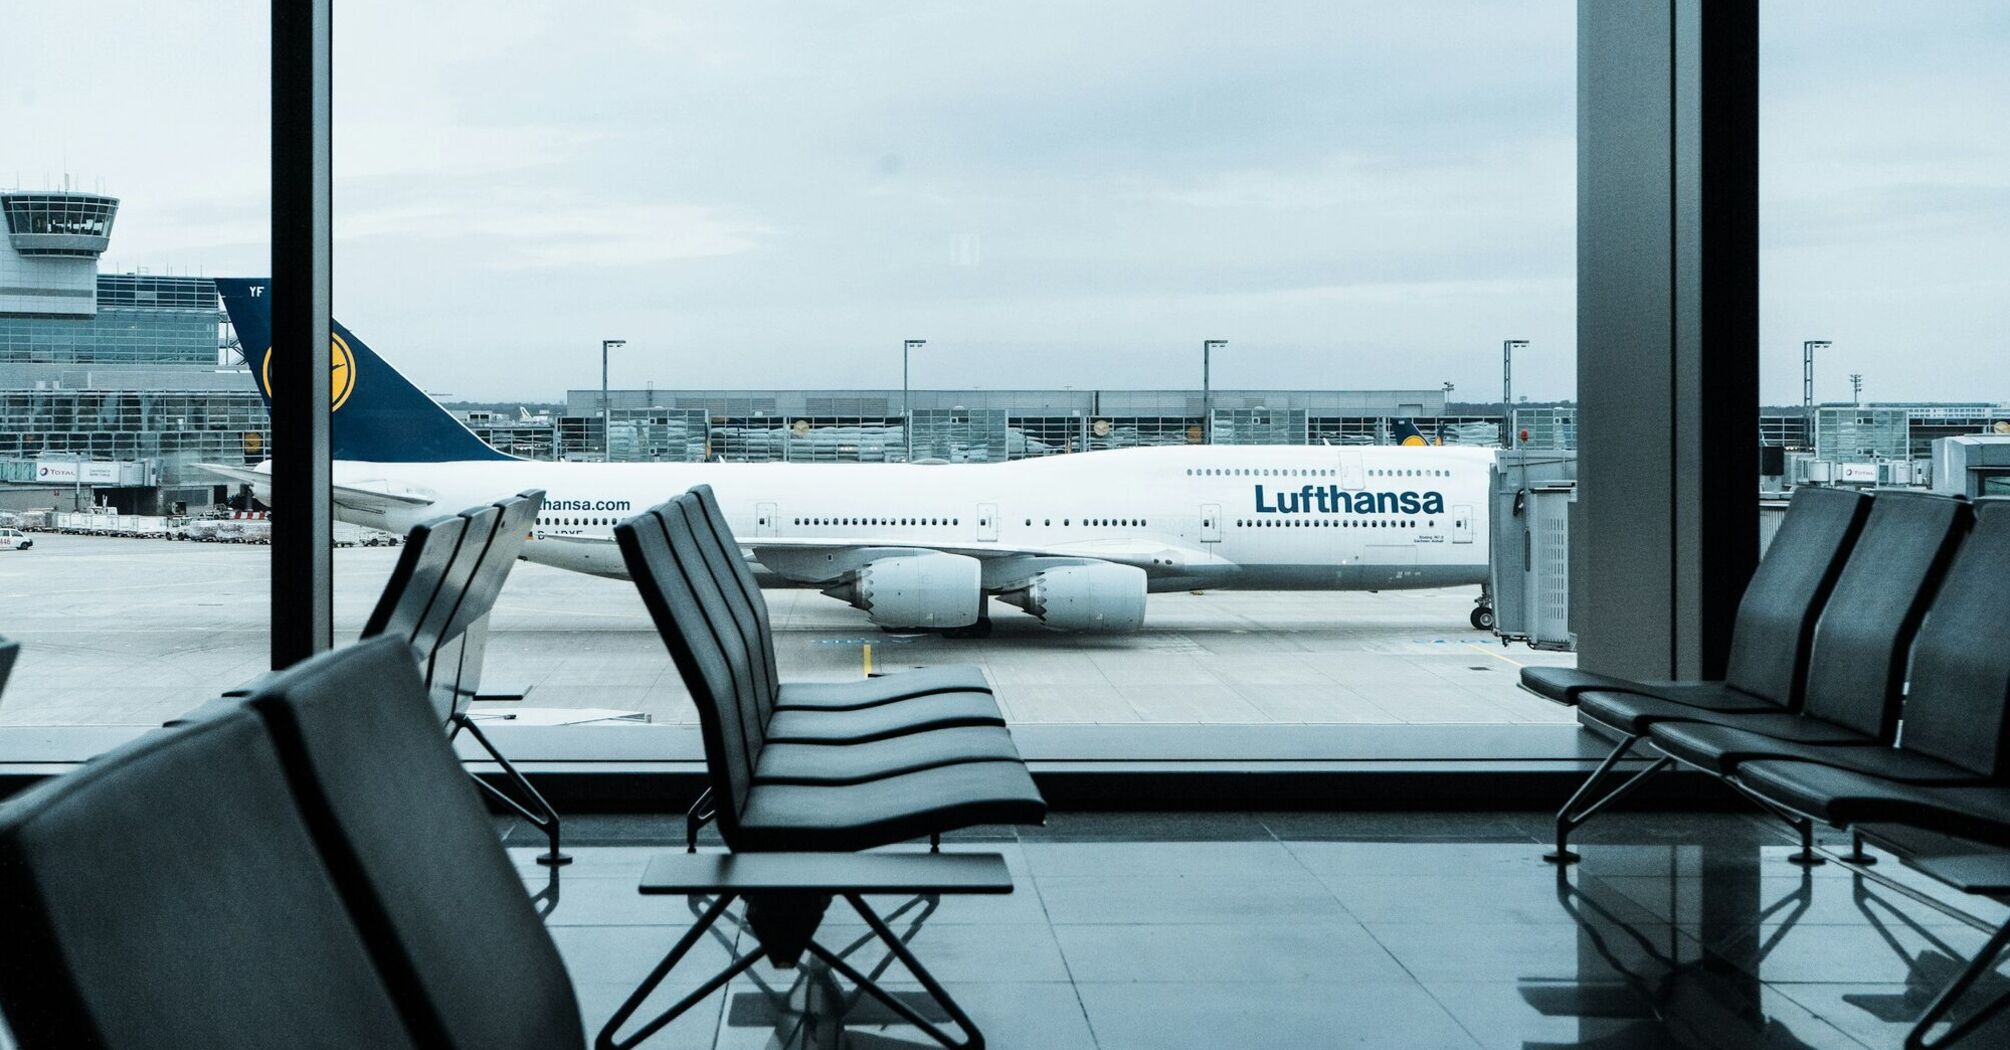 Lufthansa aircraft at an airport gate